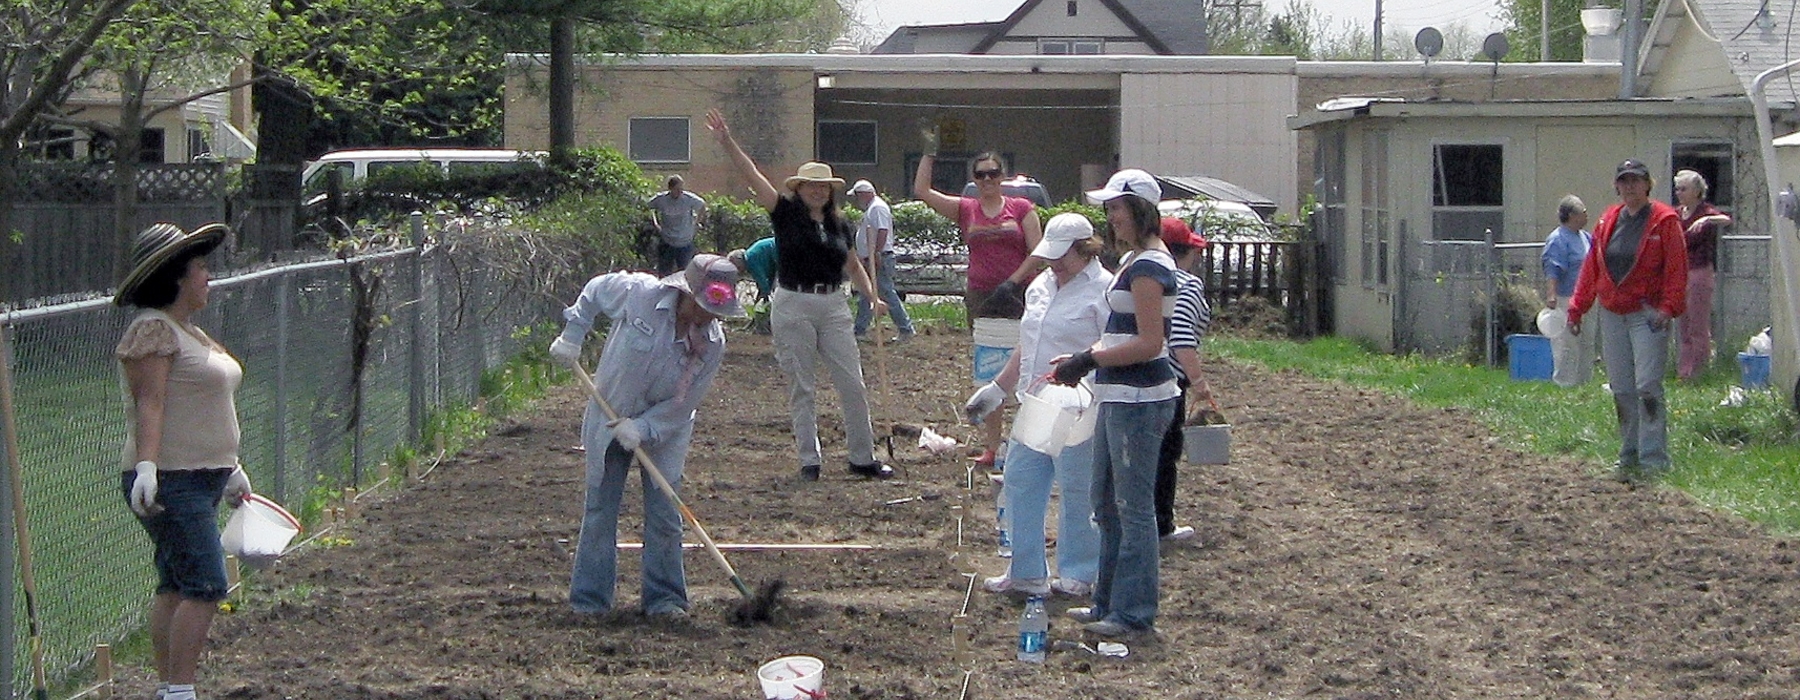 Jardineros que trabajan en el jardín comunitario